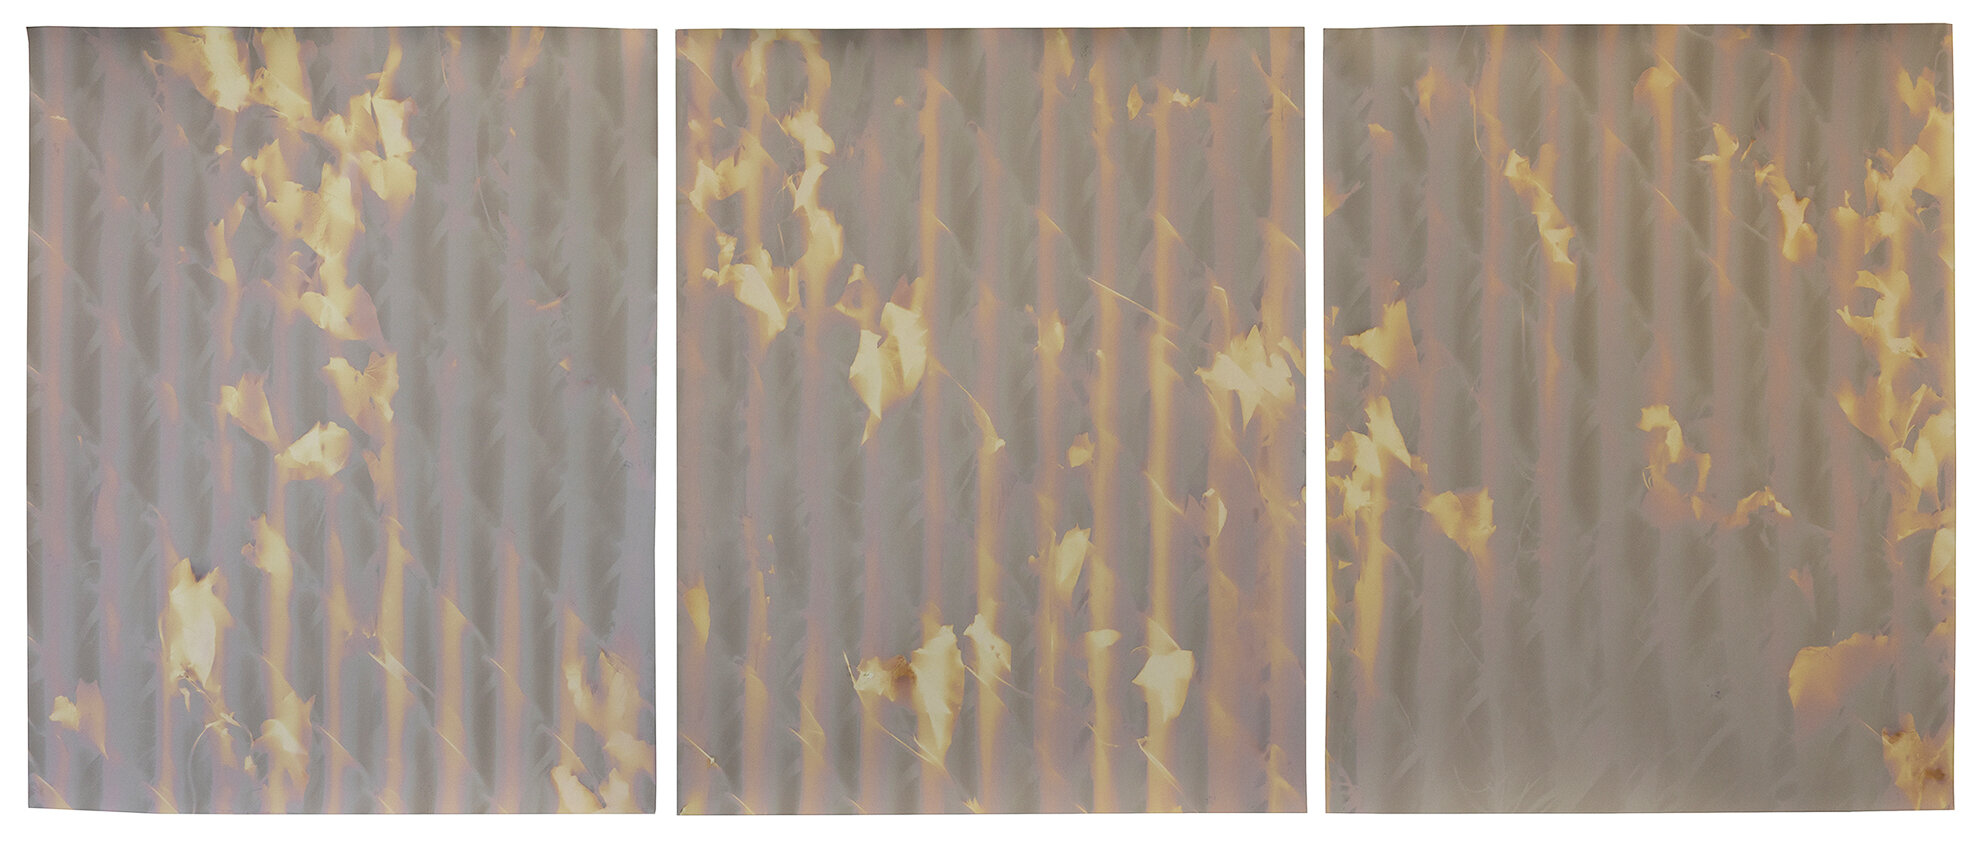  red hook triptych #4 wolcott st  20” x 48”  lumen prints 